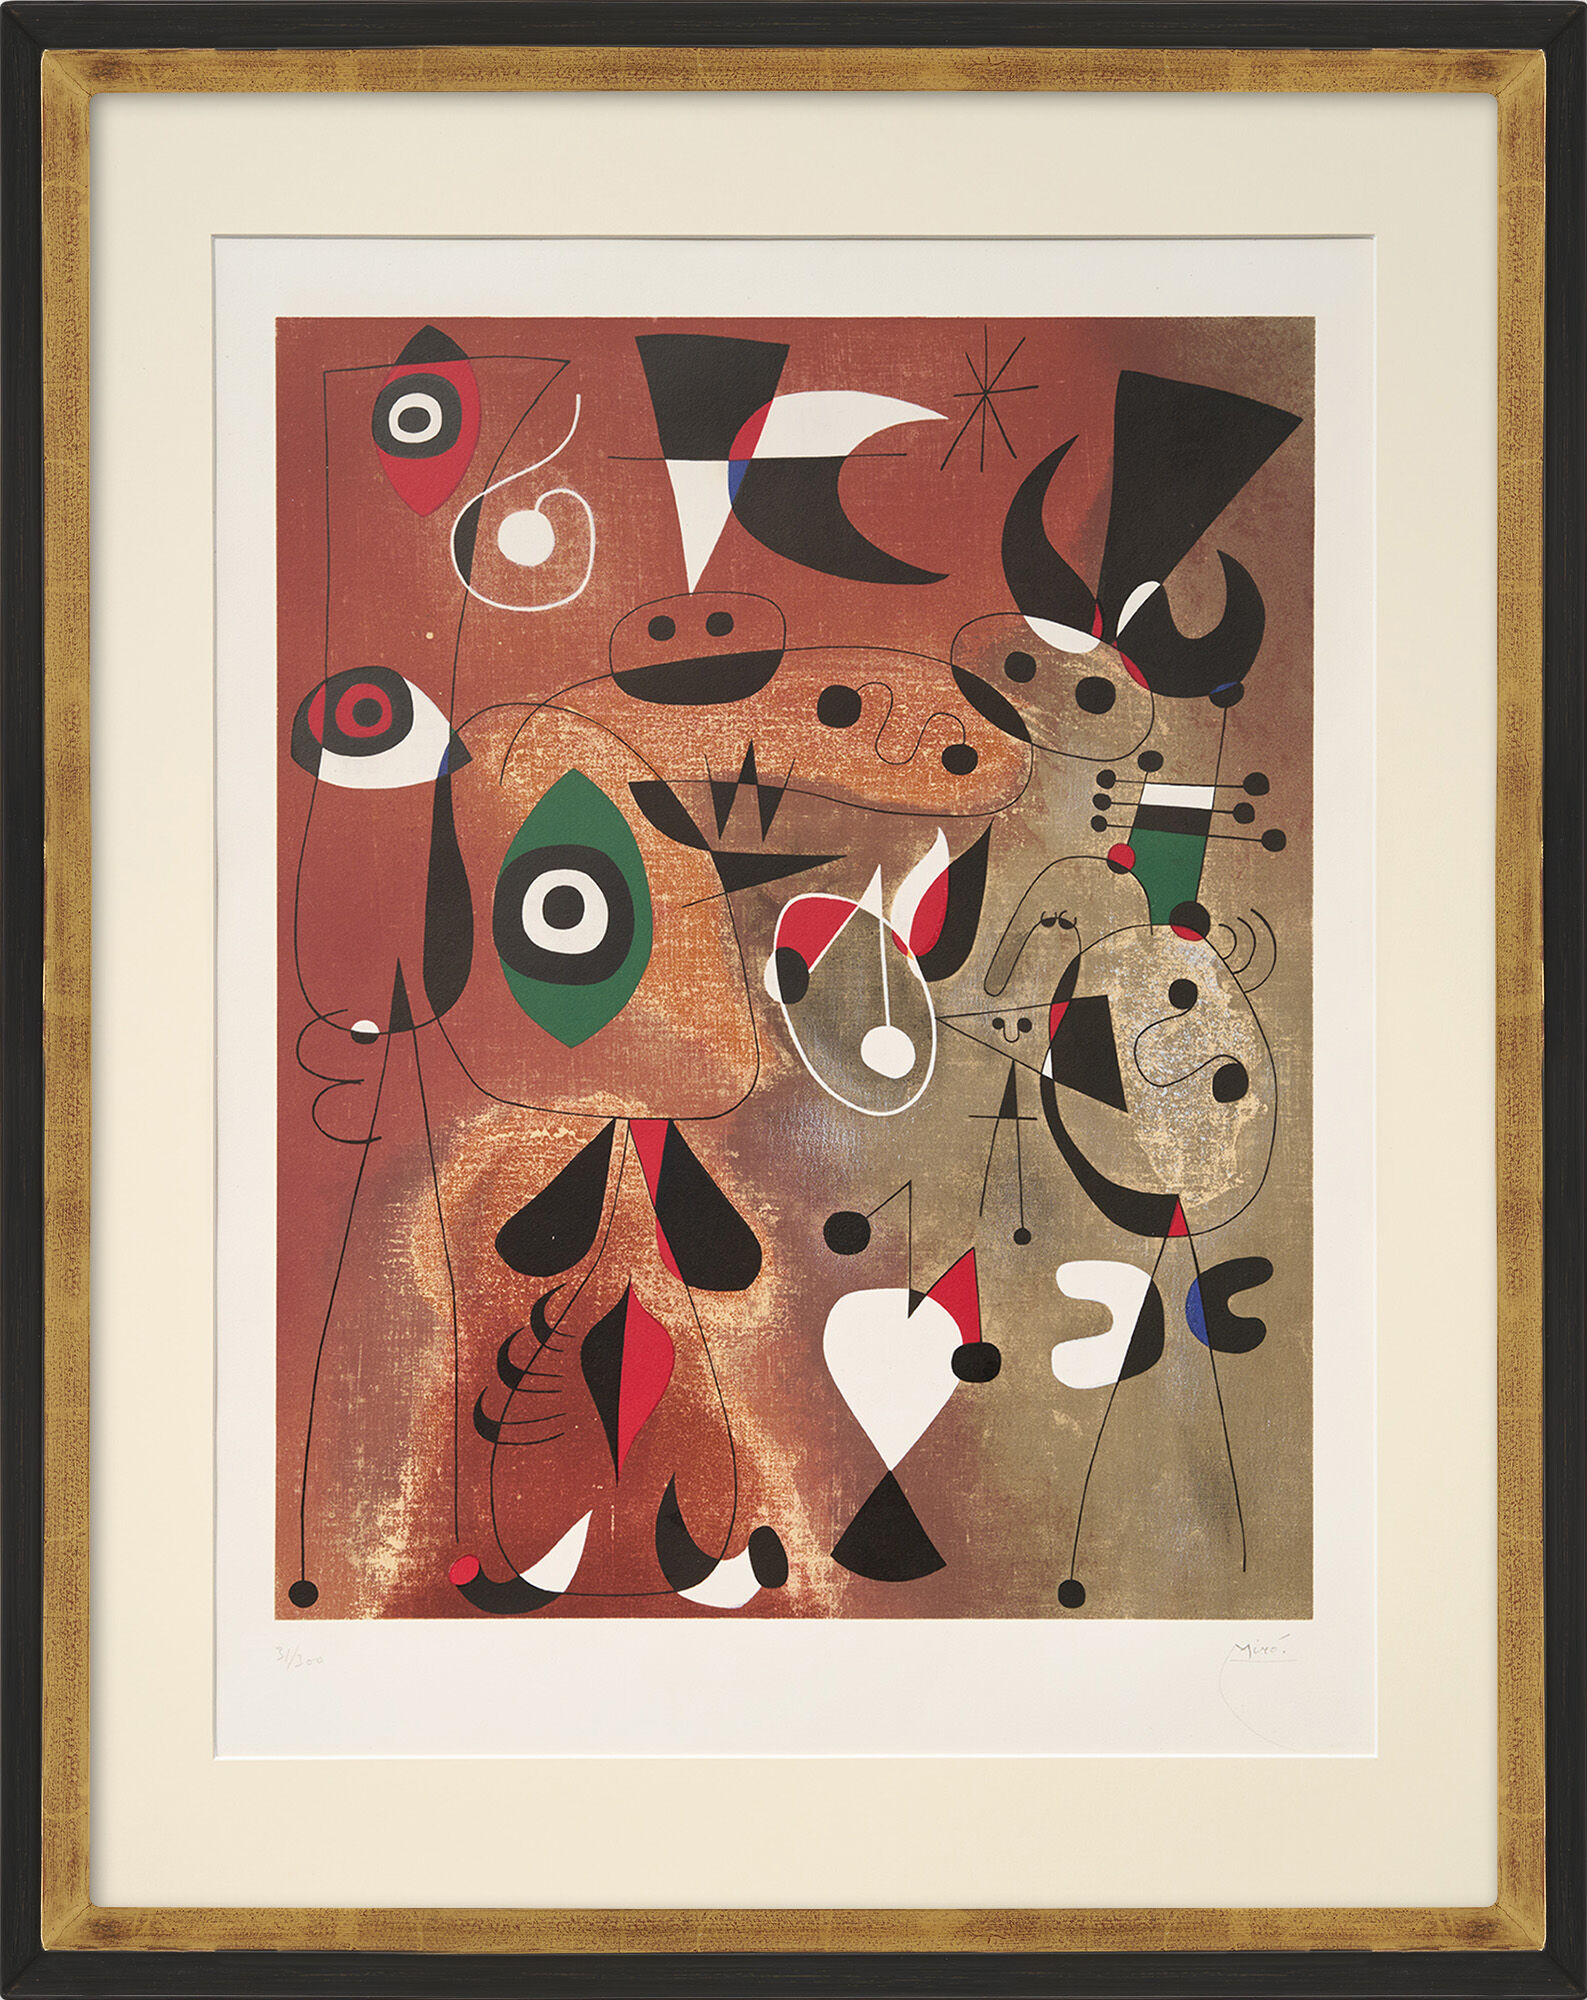 Billede "Femme, oiseau, etoile" (1960) von Joan Miró